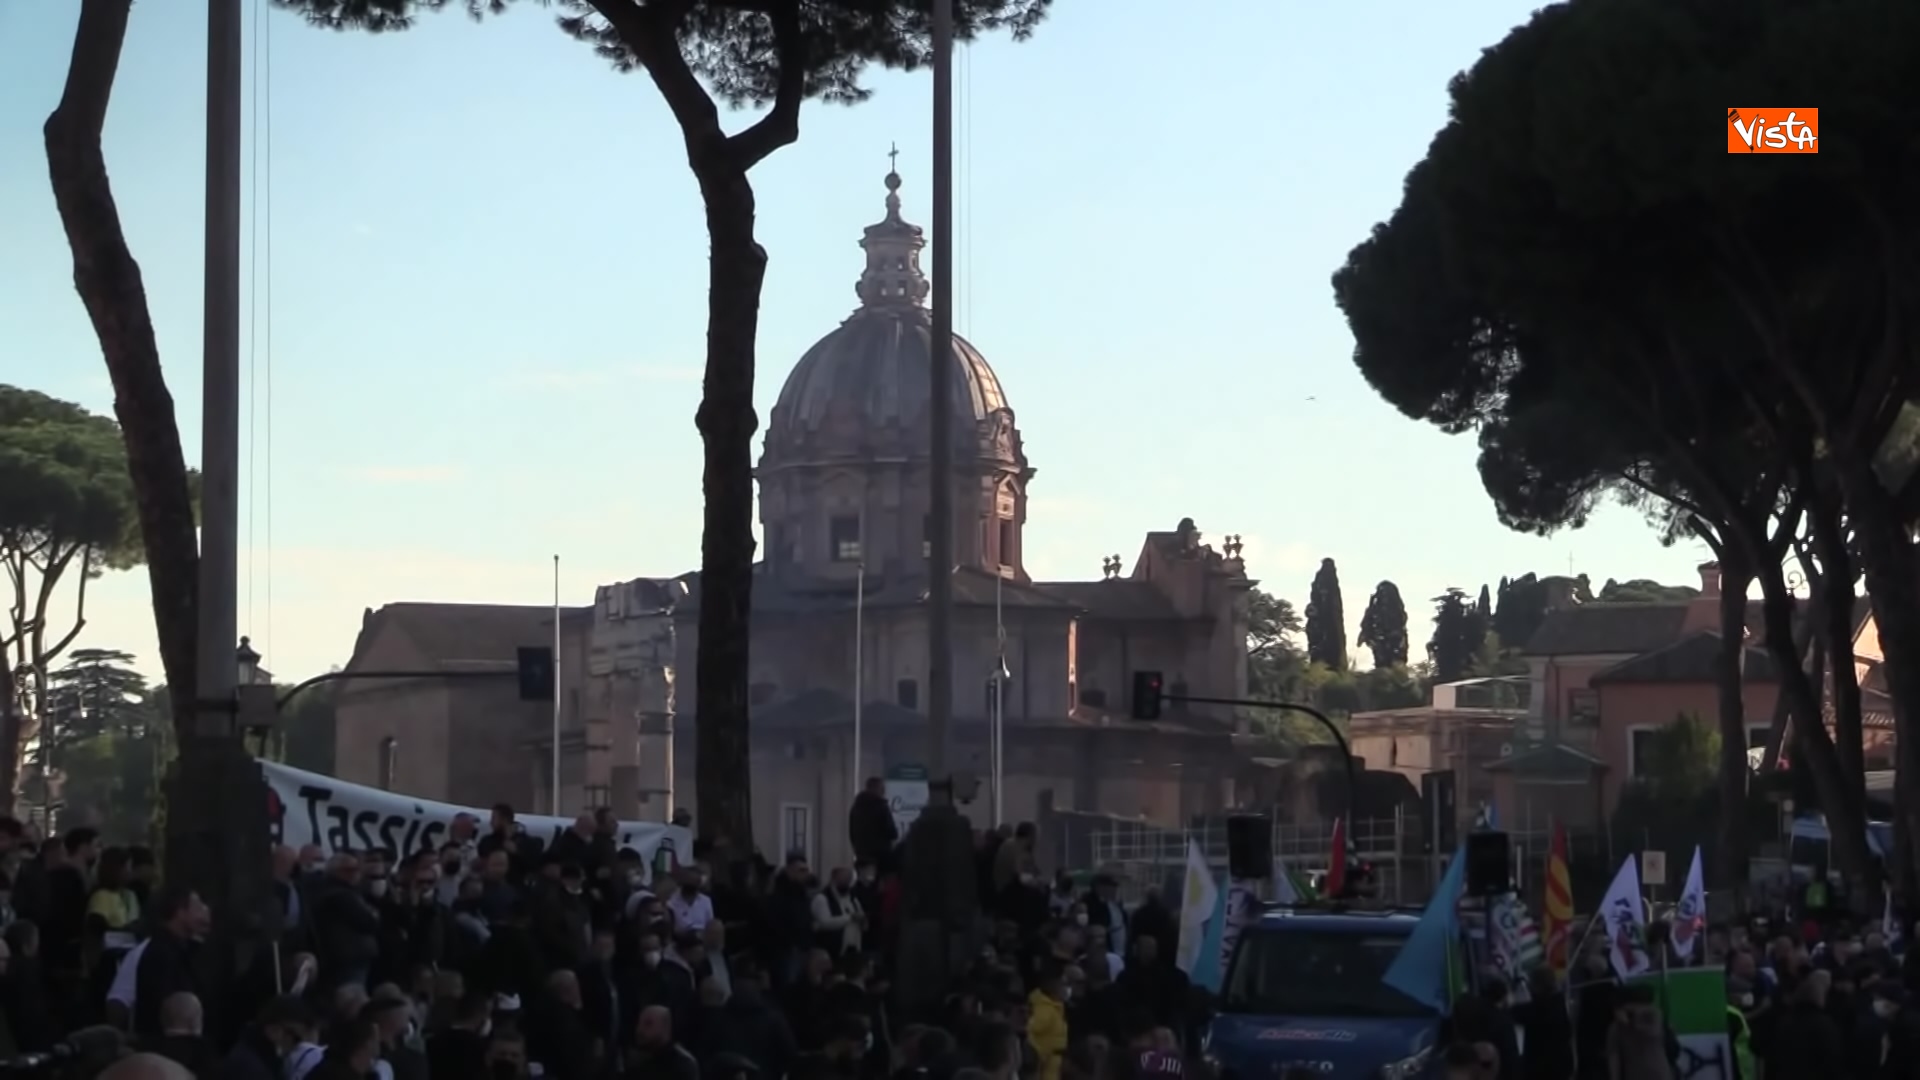 24-11-21 Protesta dei tassisti a Roma contro il Ddl concorrenza le immagini_06